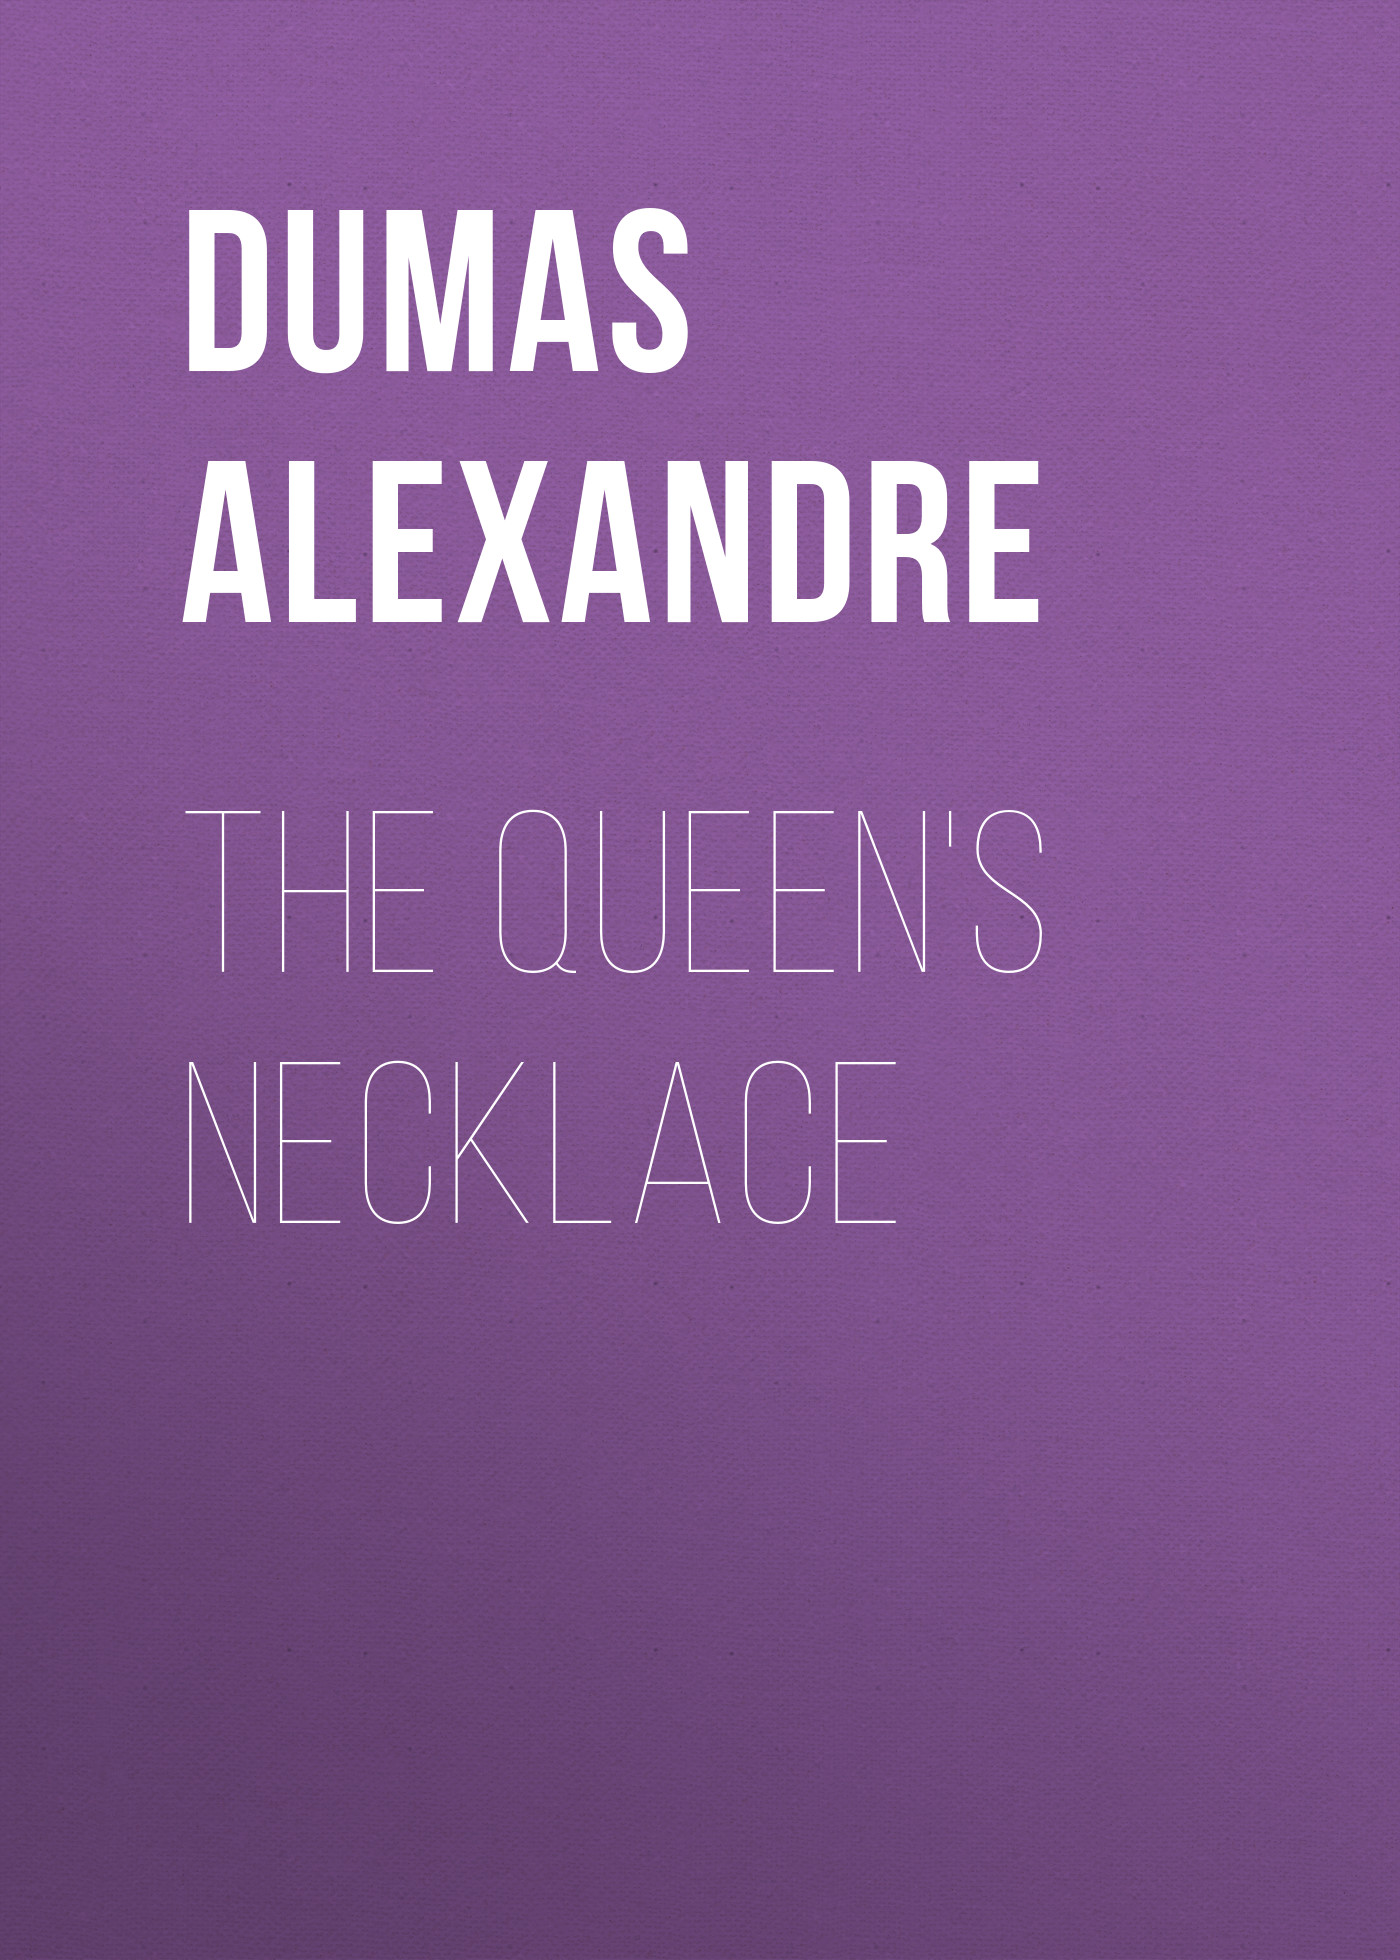 Книга The Queen's Necklace из серии , созданная Alexandre Dumas, может относится к жанру Литература 19 века, Зарубежная старинная литература, Зарубежная классика. Стоимость электронной книги The Queen's Necklace с идентификатором 25202351 составляет 0 руб.